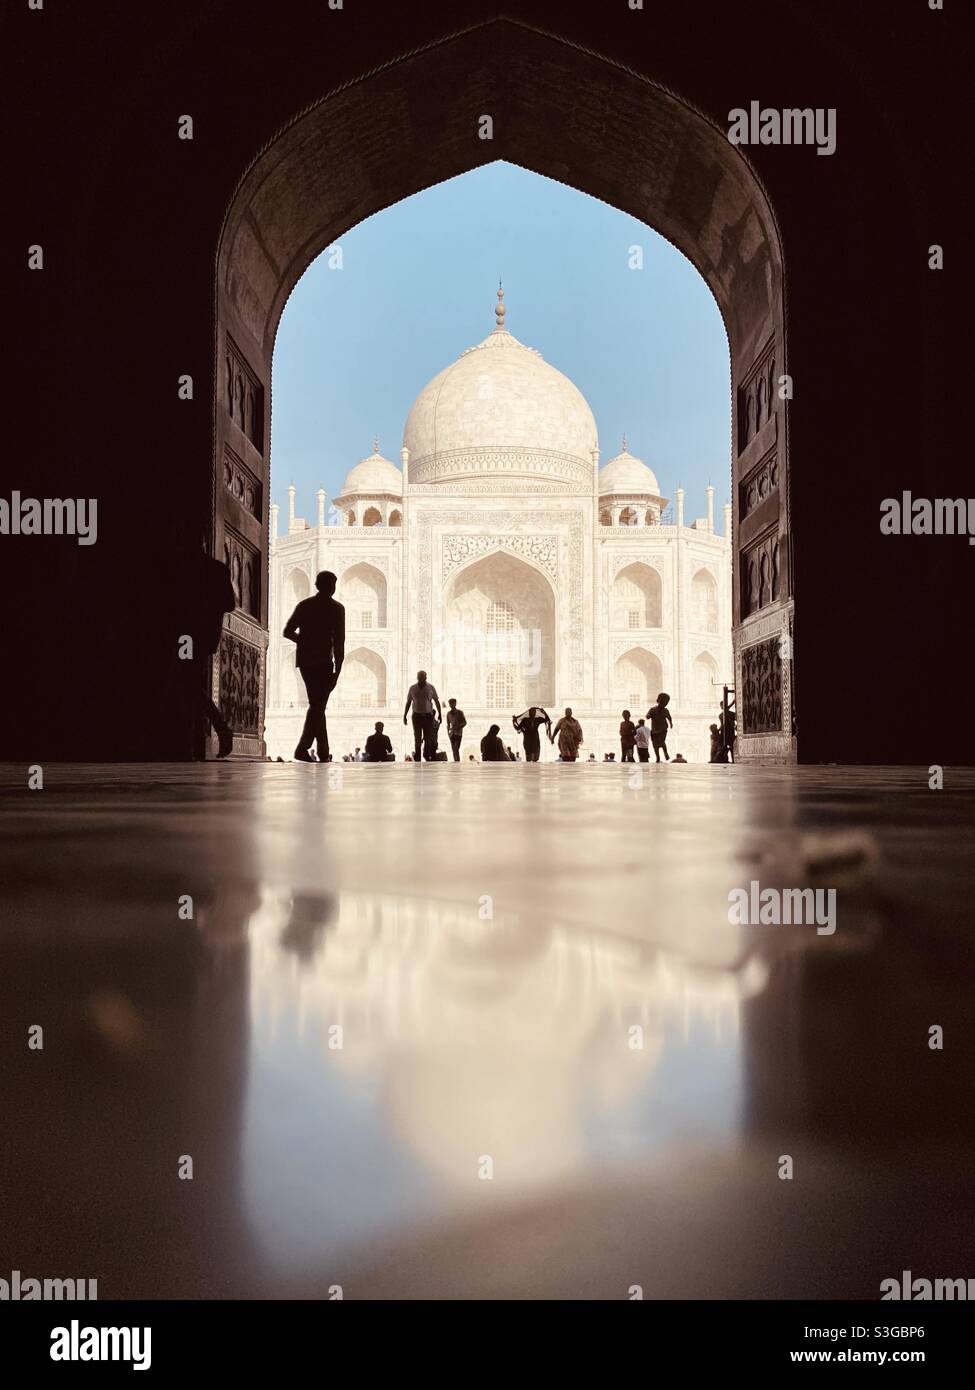 Die Marmorkuppel des Taj Mahal, zwischen 1631 und 1648 von Kaiser Shah Jahan für seine Frau Mumtaz erbaut, spiegelt sich im Marmorboden der angrenzenden Moschee in Agra, Indien, wider. Stockfoto